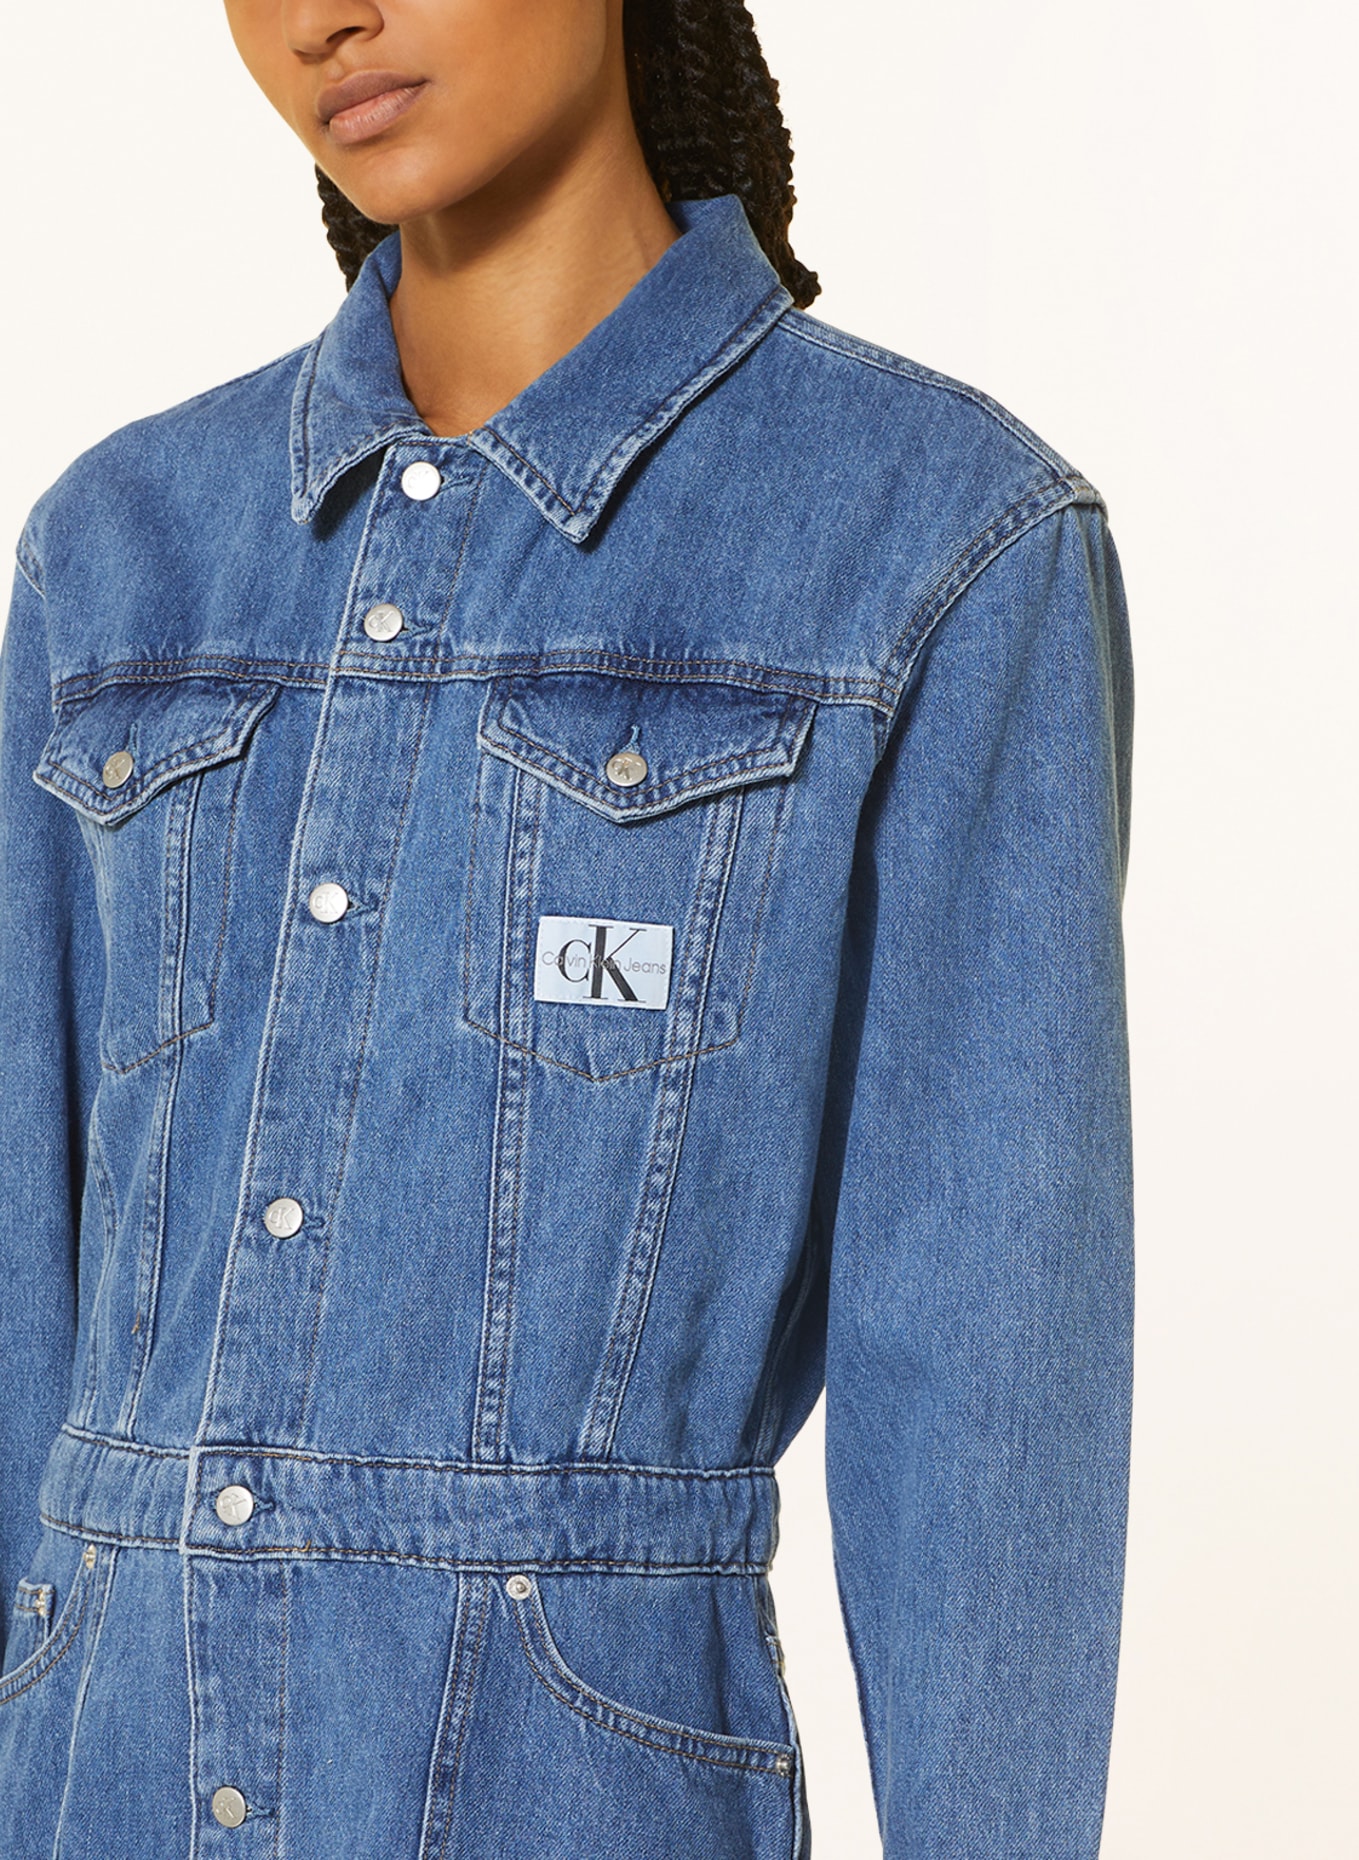 Calvin Klein Jeans Jeanskleid in 1a4 denim medium